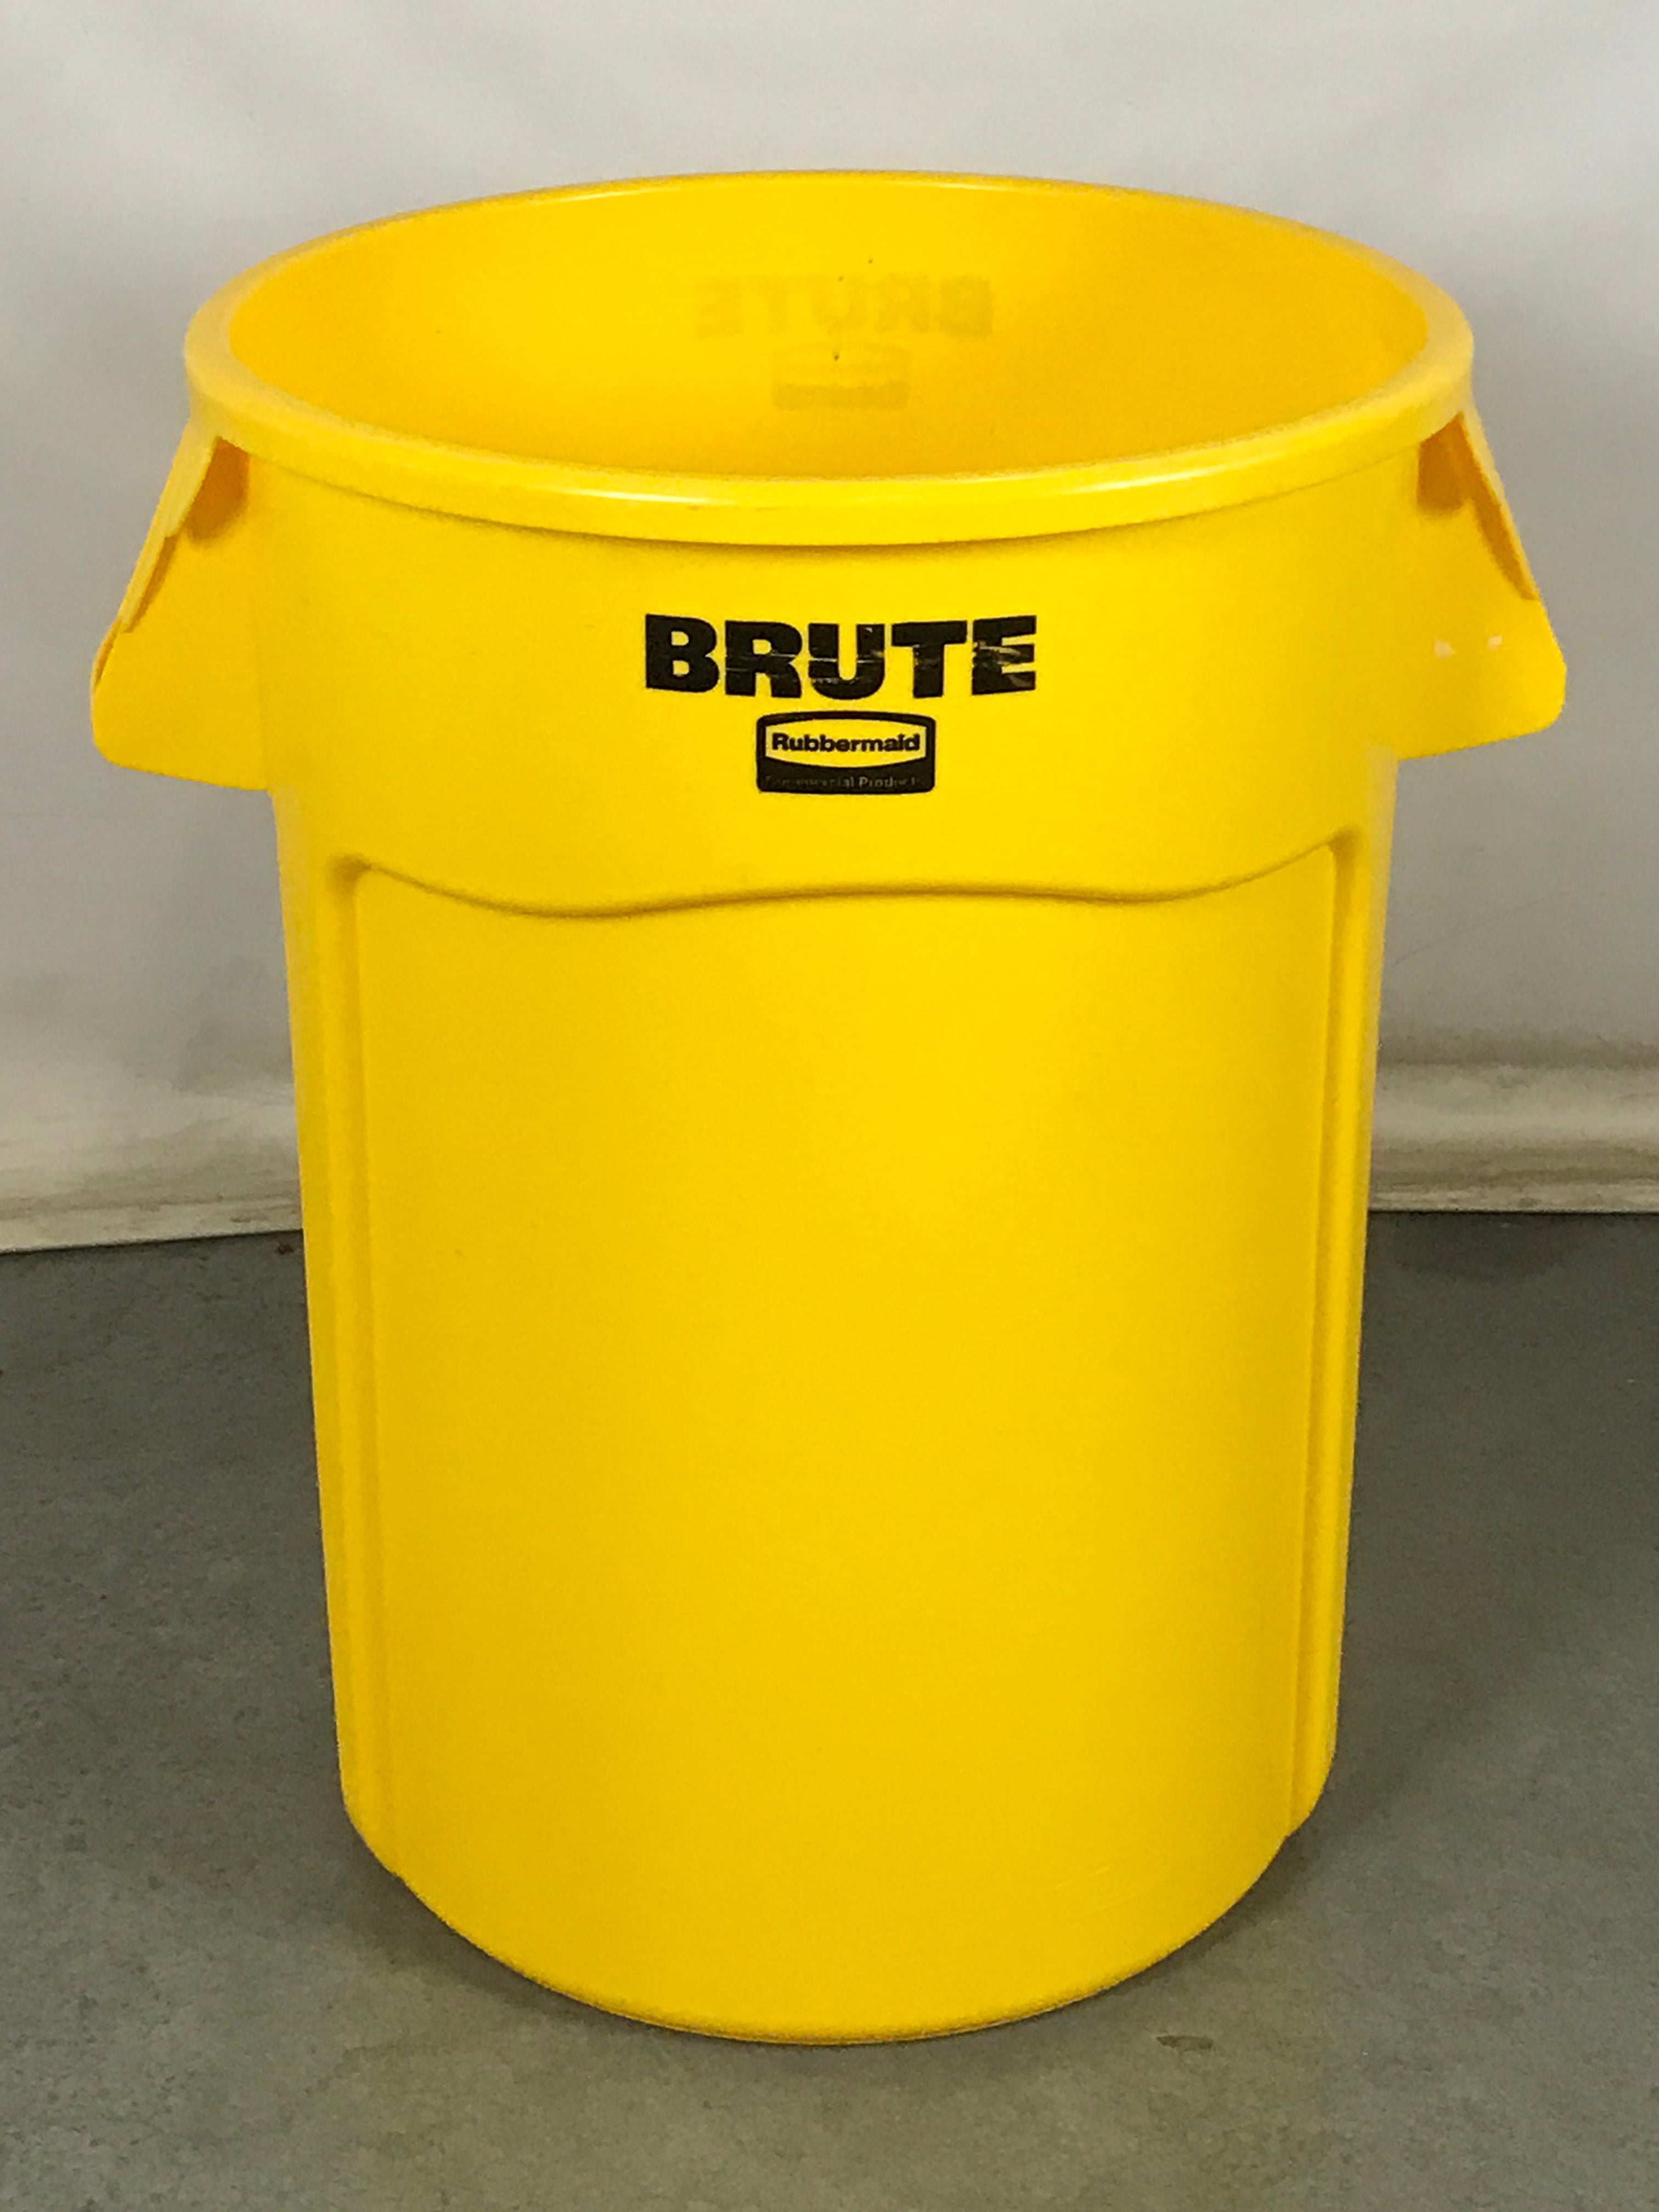 Brute Rubbermaid Yellow Trash Bin